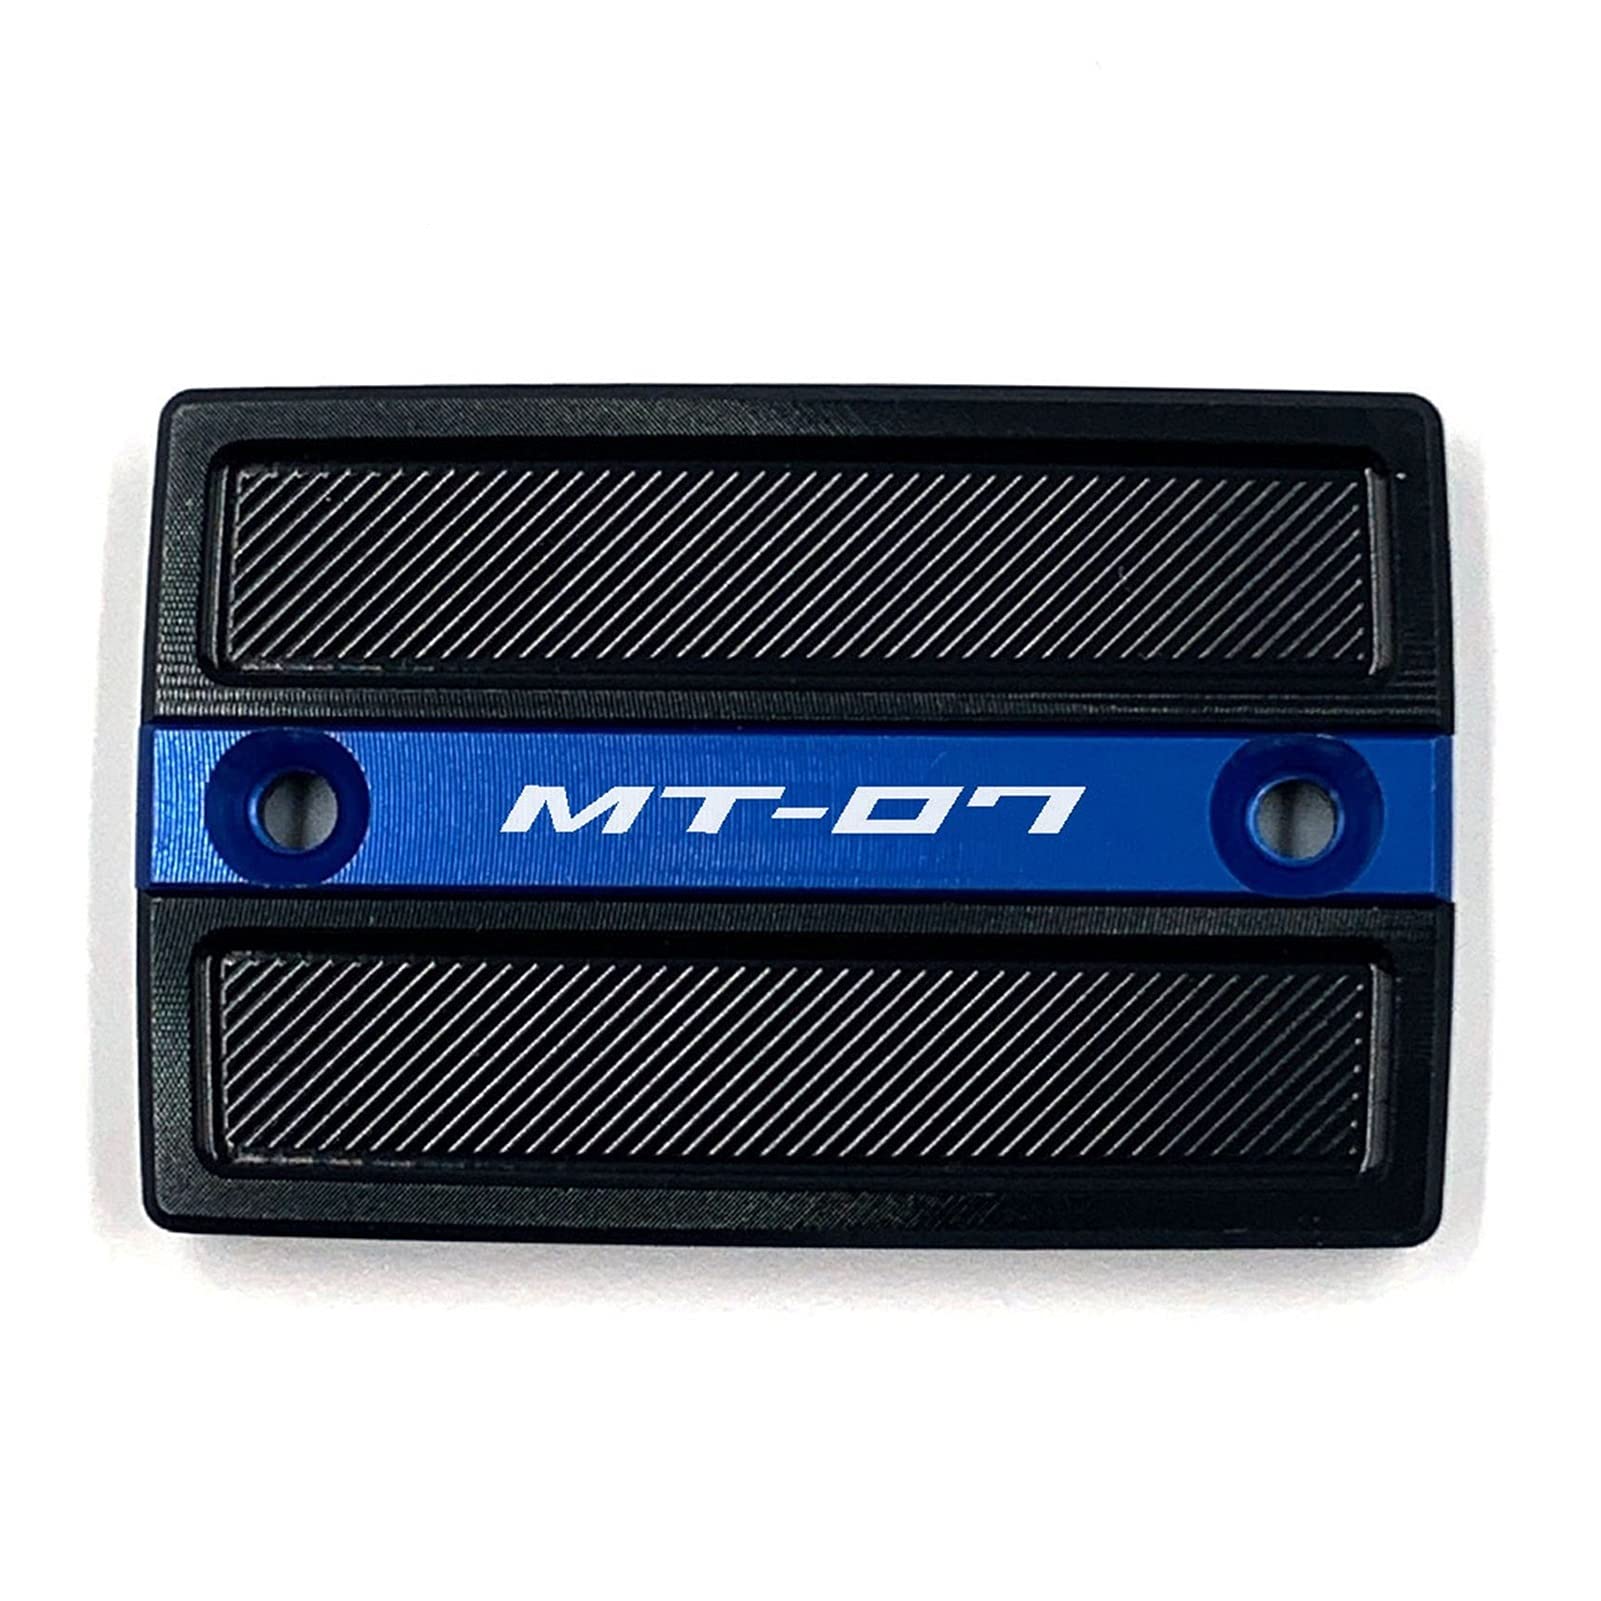 XYWOPO Motorrad CNC Vorderradbremsflüssigkeitsbehälter-Abdeckkappe Dekorativer Schutz, for YAMAHA, MT07 MT-07 2014-2020 Schutz für Bremsflüssigkeitsbehälter(Blue) von XYWOPO